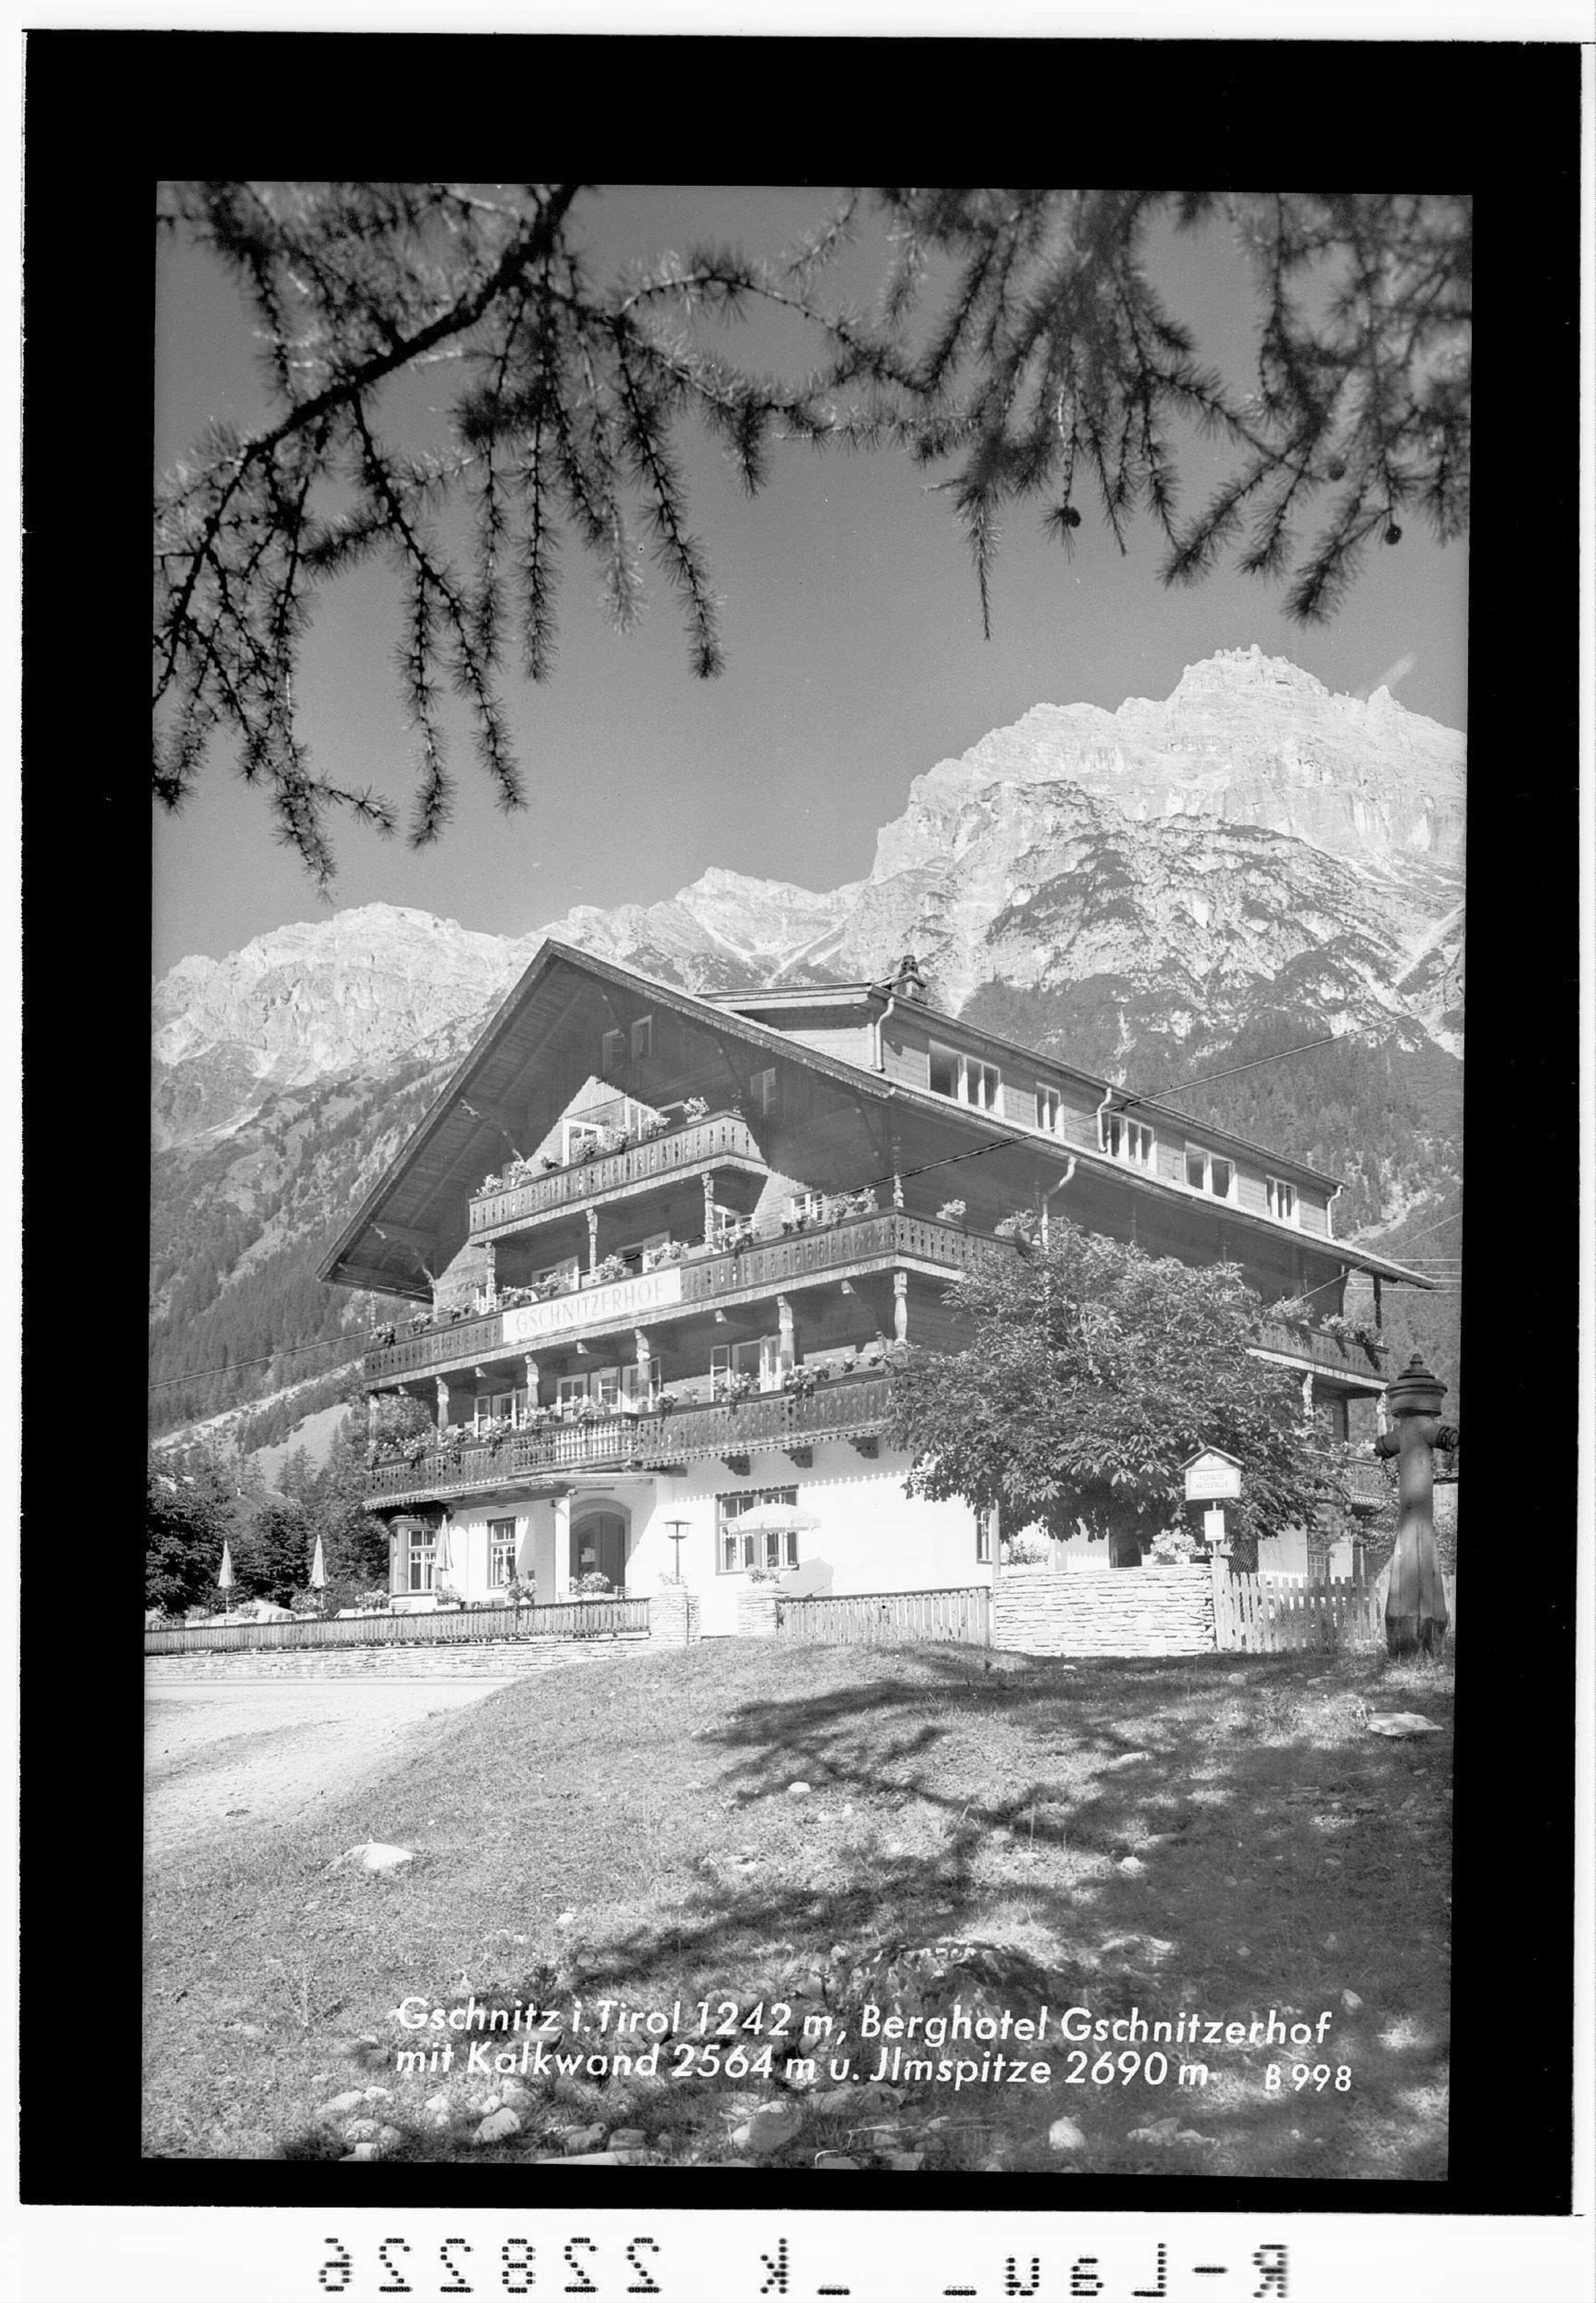 Gschnitz in Tirol 1242 m / Berghotel Gschnitzerhof mit Kalkwand 2564 m und Ilmspitze 2690 m></div>


    <hr>
    <div class=